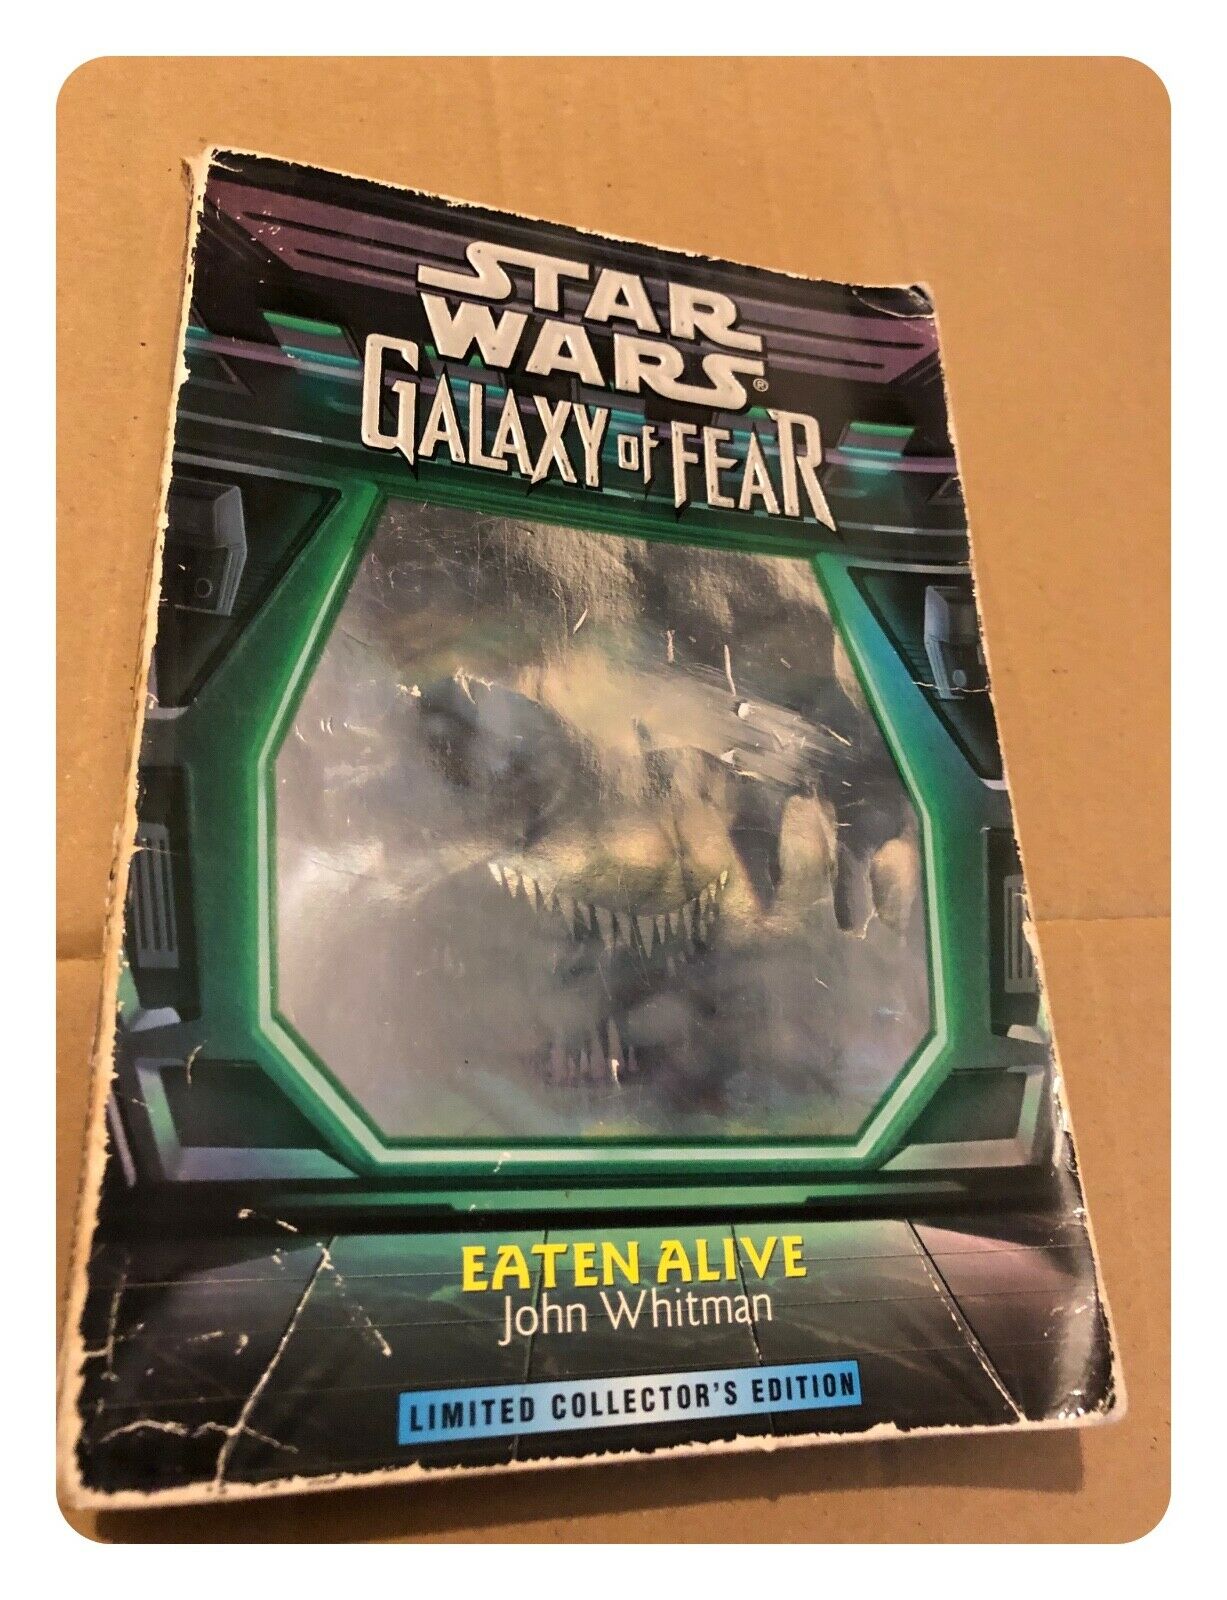 Star Wars Galaxy of Fear: Eaten Alive by John Whitman (Paperback 1997)